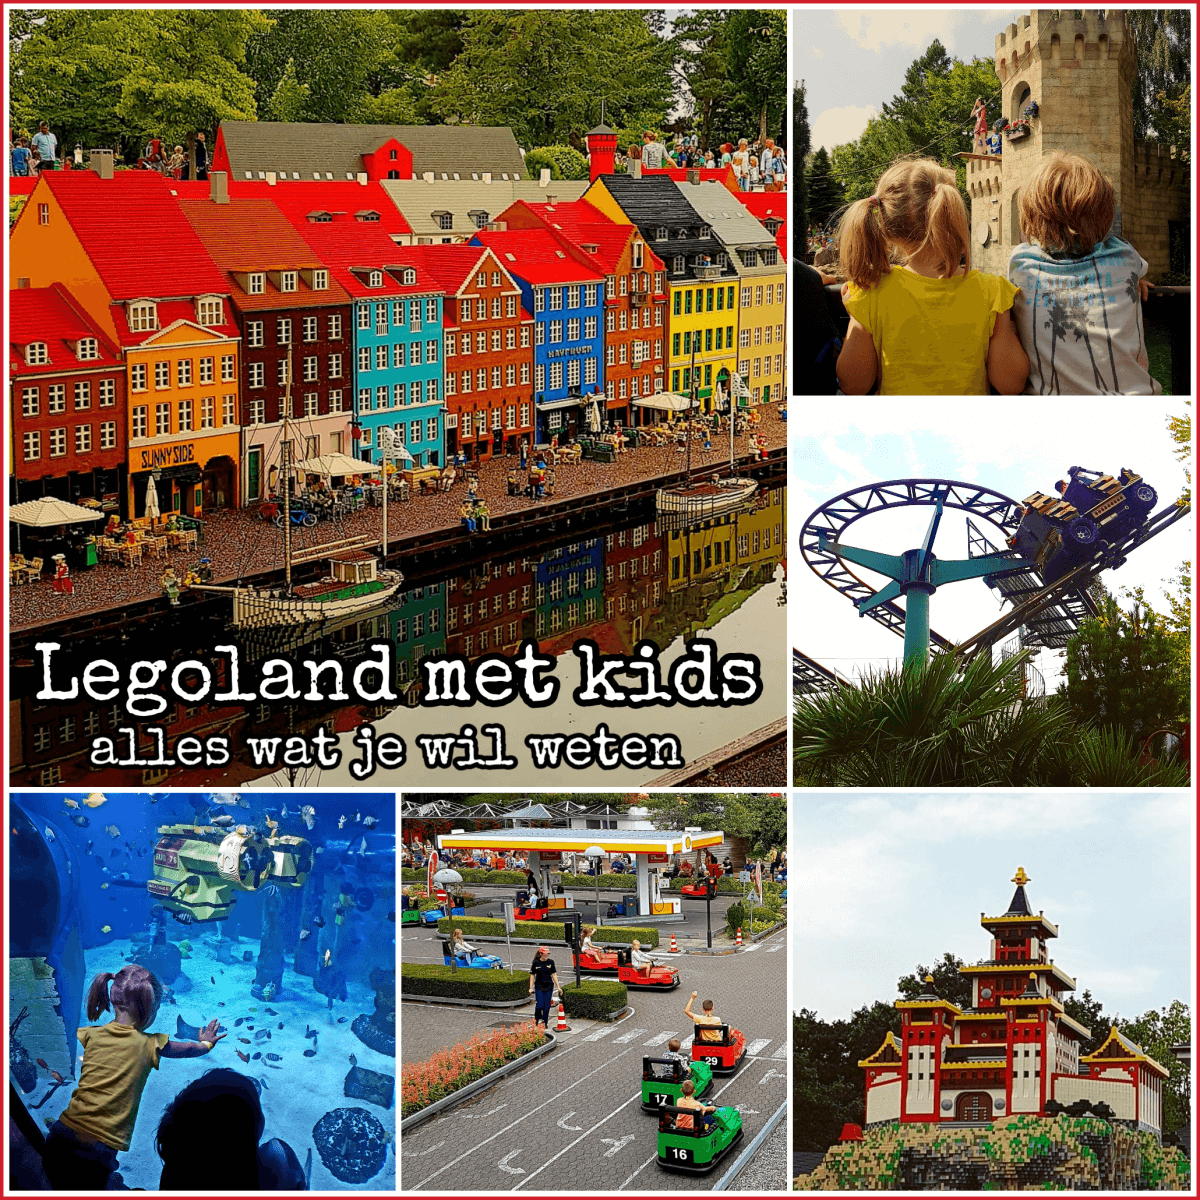 Legoland met kids - alles wat je wil weten #leukmetkids #denemarken